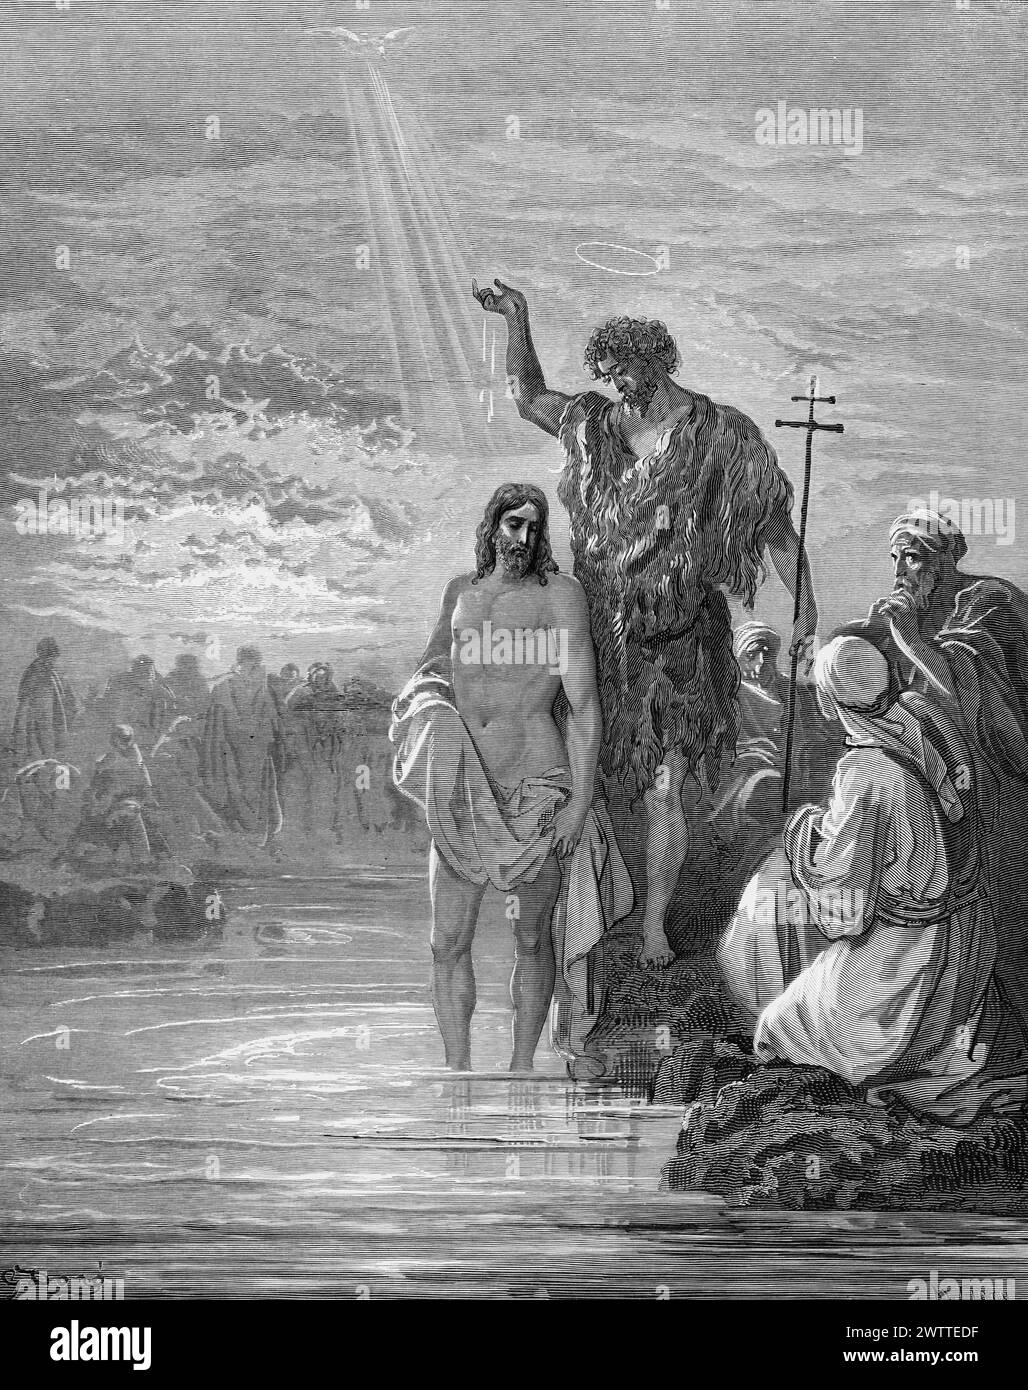 Le baptême de Jésus, ancien Testament, Bible, L'Evangile selon Metthew 3, , ilustration historique 1886 Banque D'Images